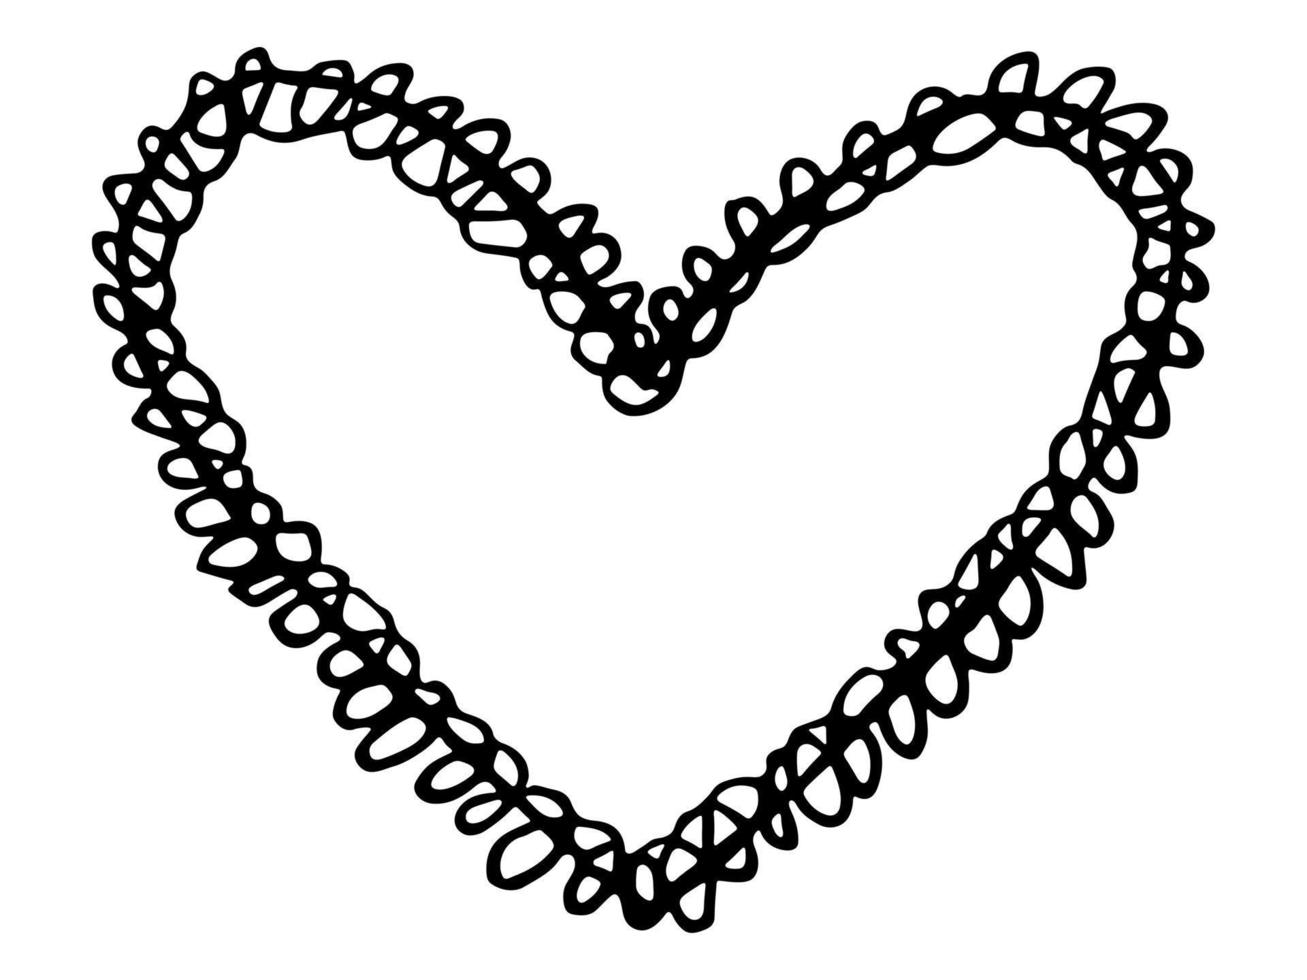 ilustración de corazón dibujada a mano simple. lindo garabato del corazón del día de san valentín. Imágenes Prediseñadas de amor vector